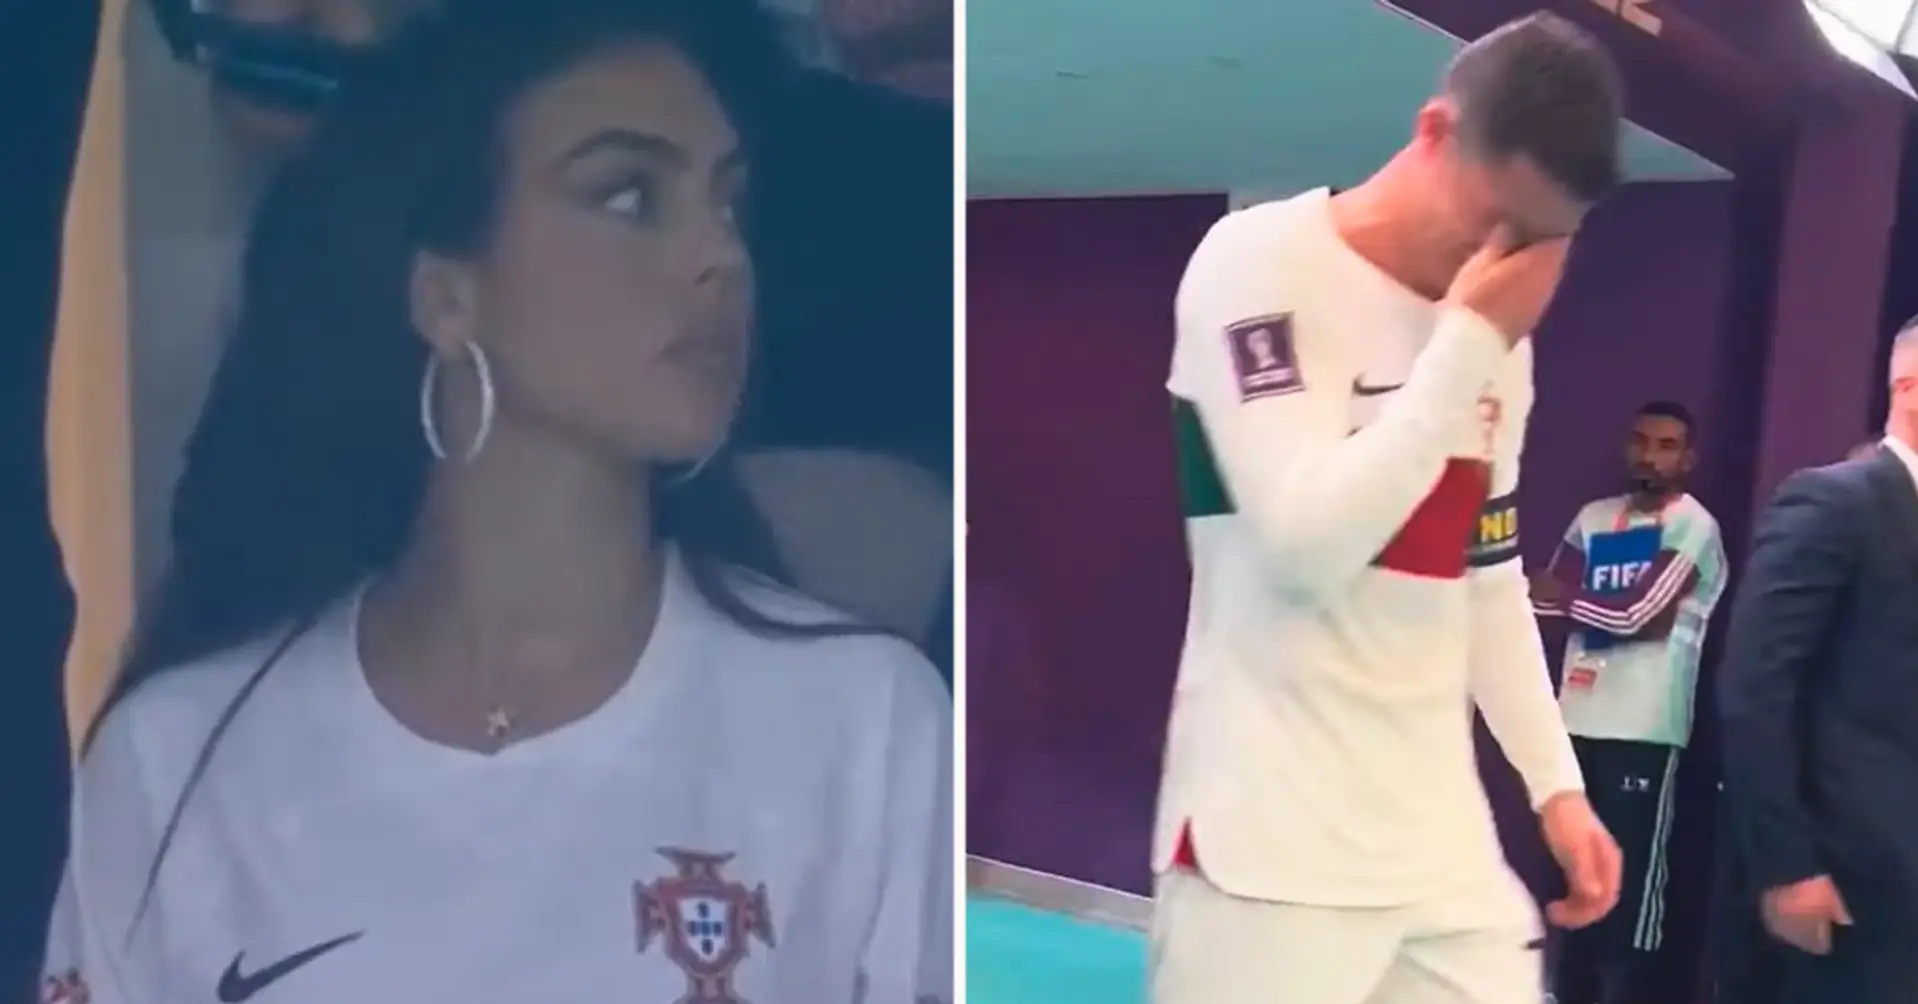 Ronaldos Verlobte Georgina Rodriguez: "Dein Freund, den du so sehr bewunderst und respektierst, hat die falsche Entscheidung getroffen"